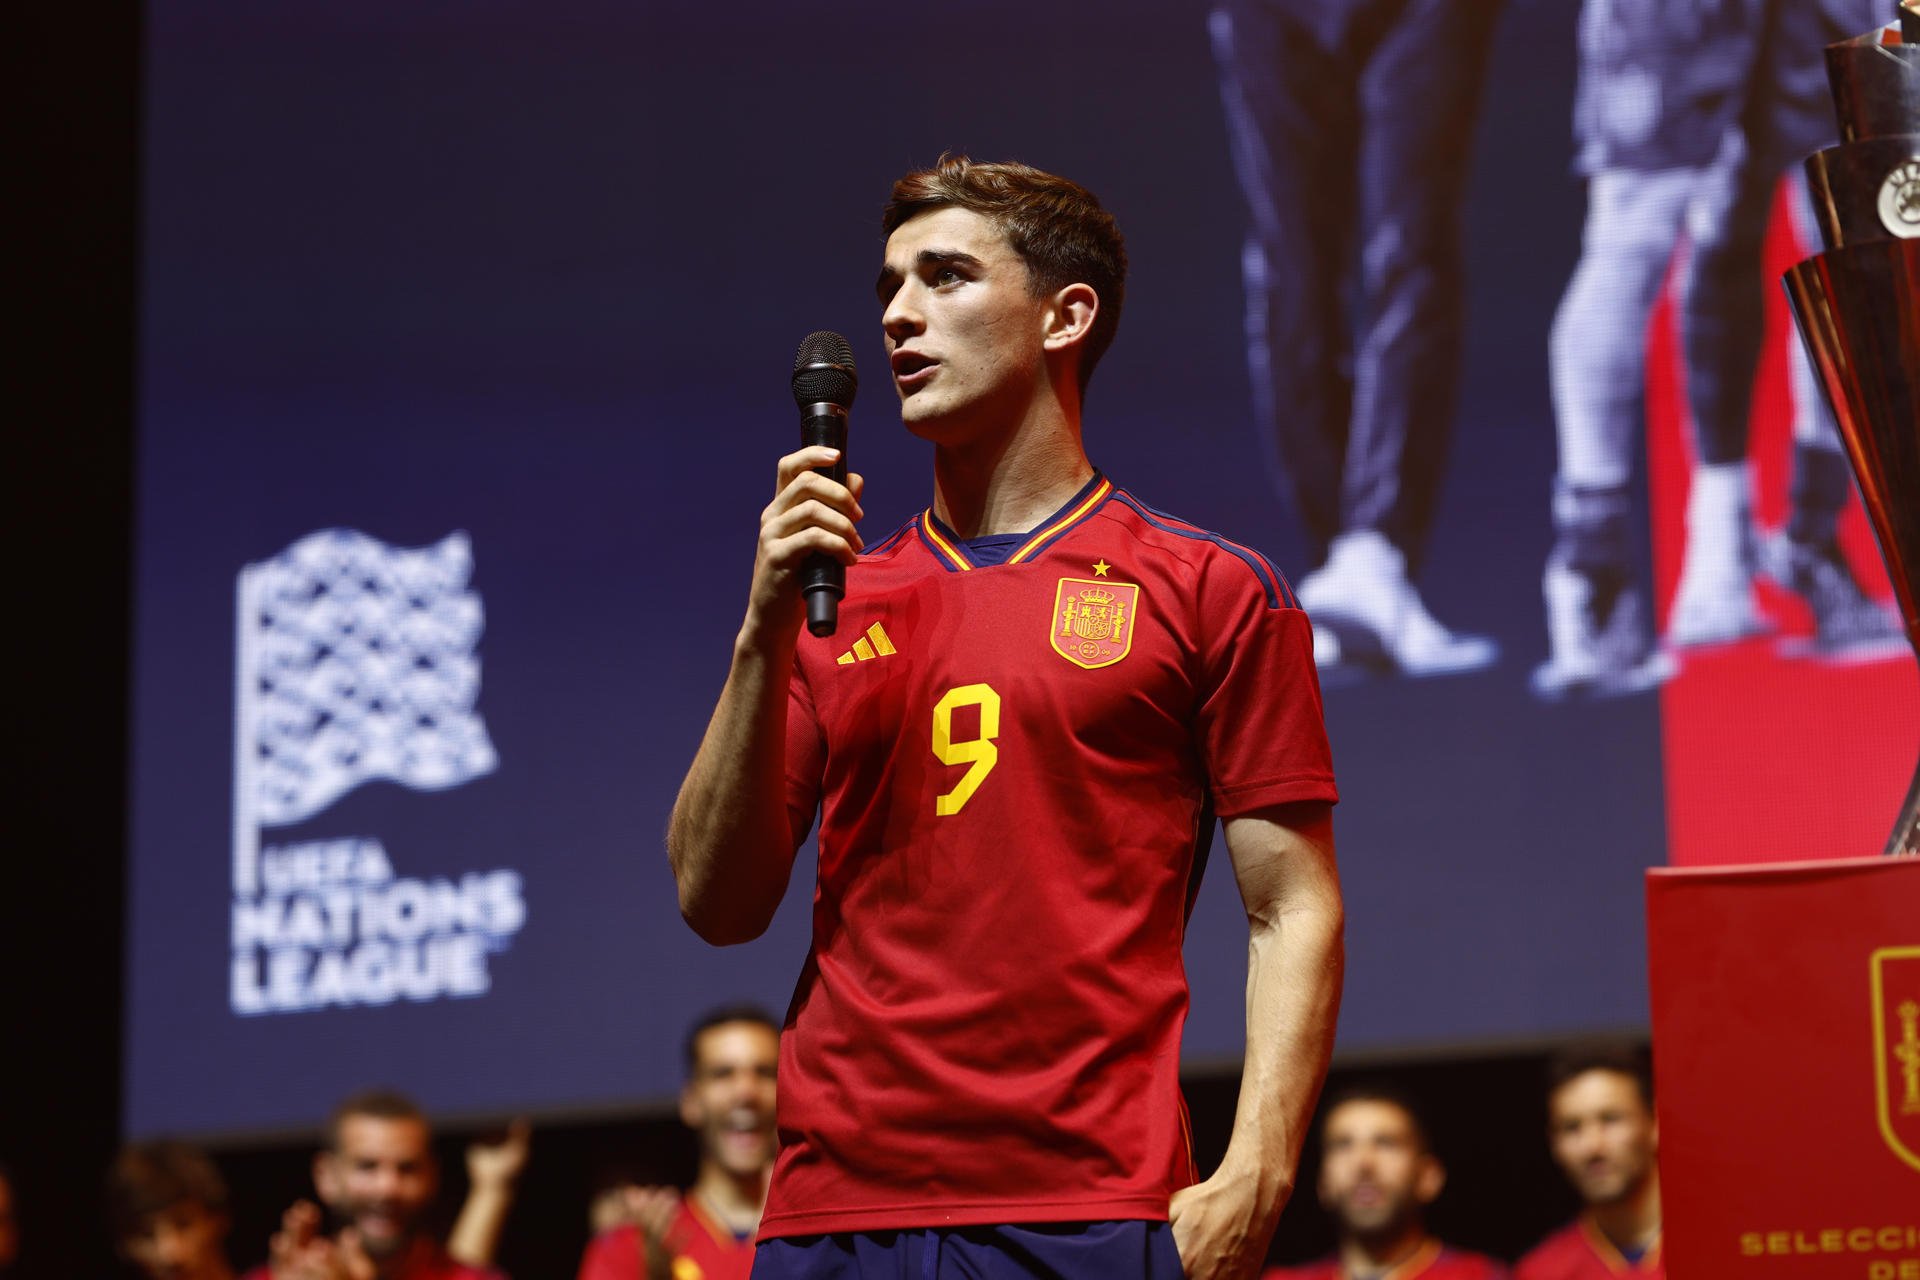 Inadmissibles insults contra el Barça durant el discurs de Gavi a la celebració de la selecció espanyola